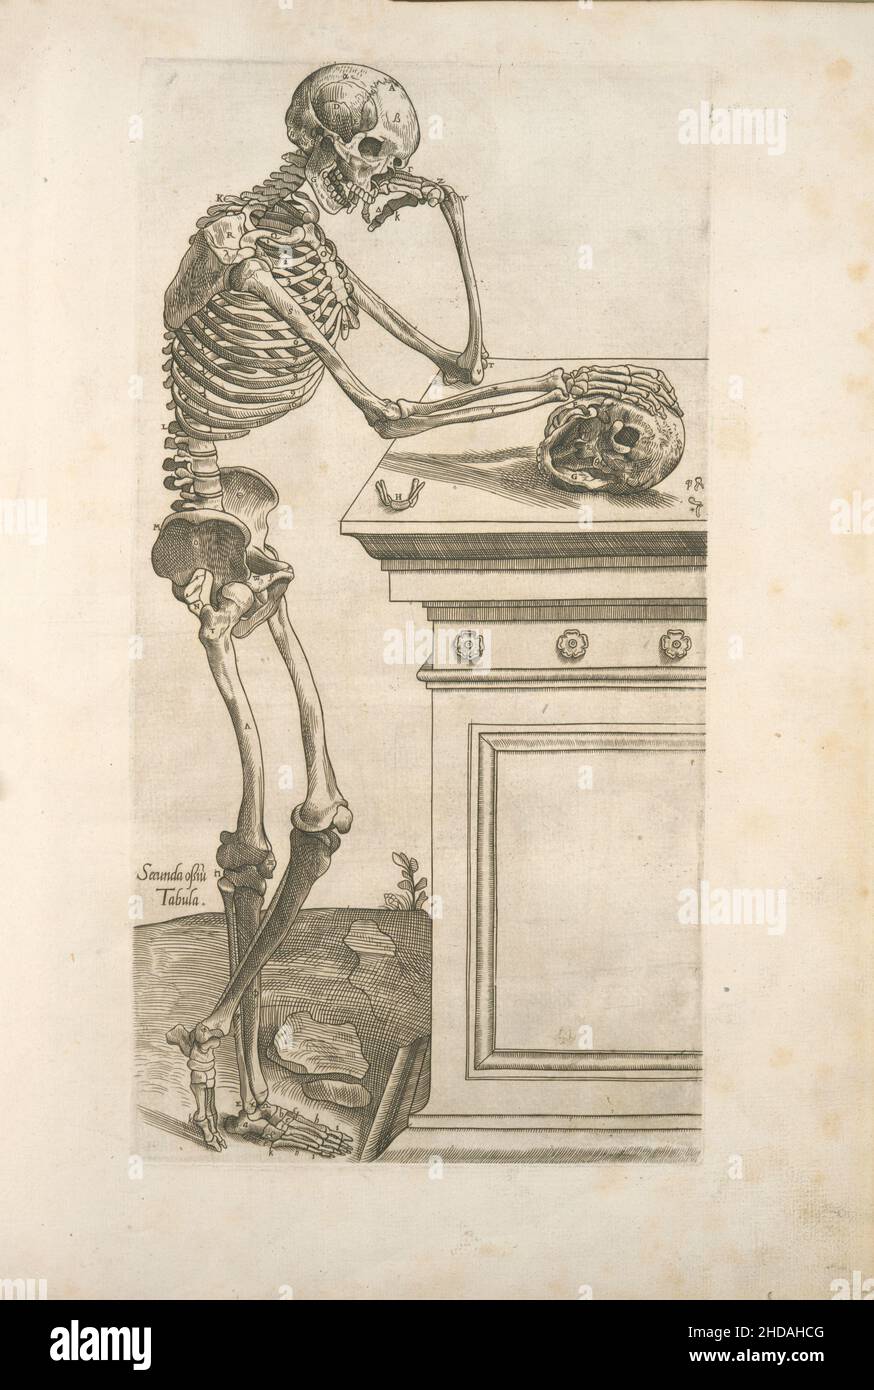 Secunda ossio tabula. Esqueleto humano inspeccionando un cráneo y en pensamiento profundo. 1545 Por Thomas Geminus, d. 1562 (Autor) Foto de stock